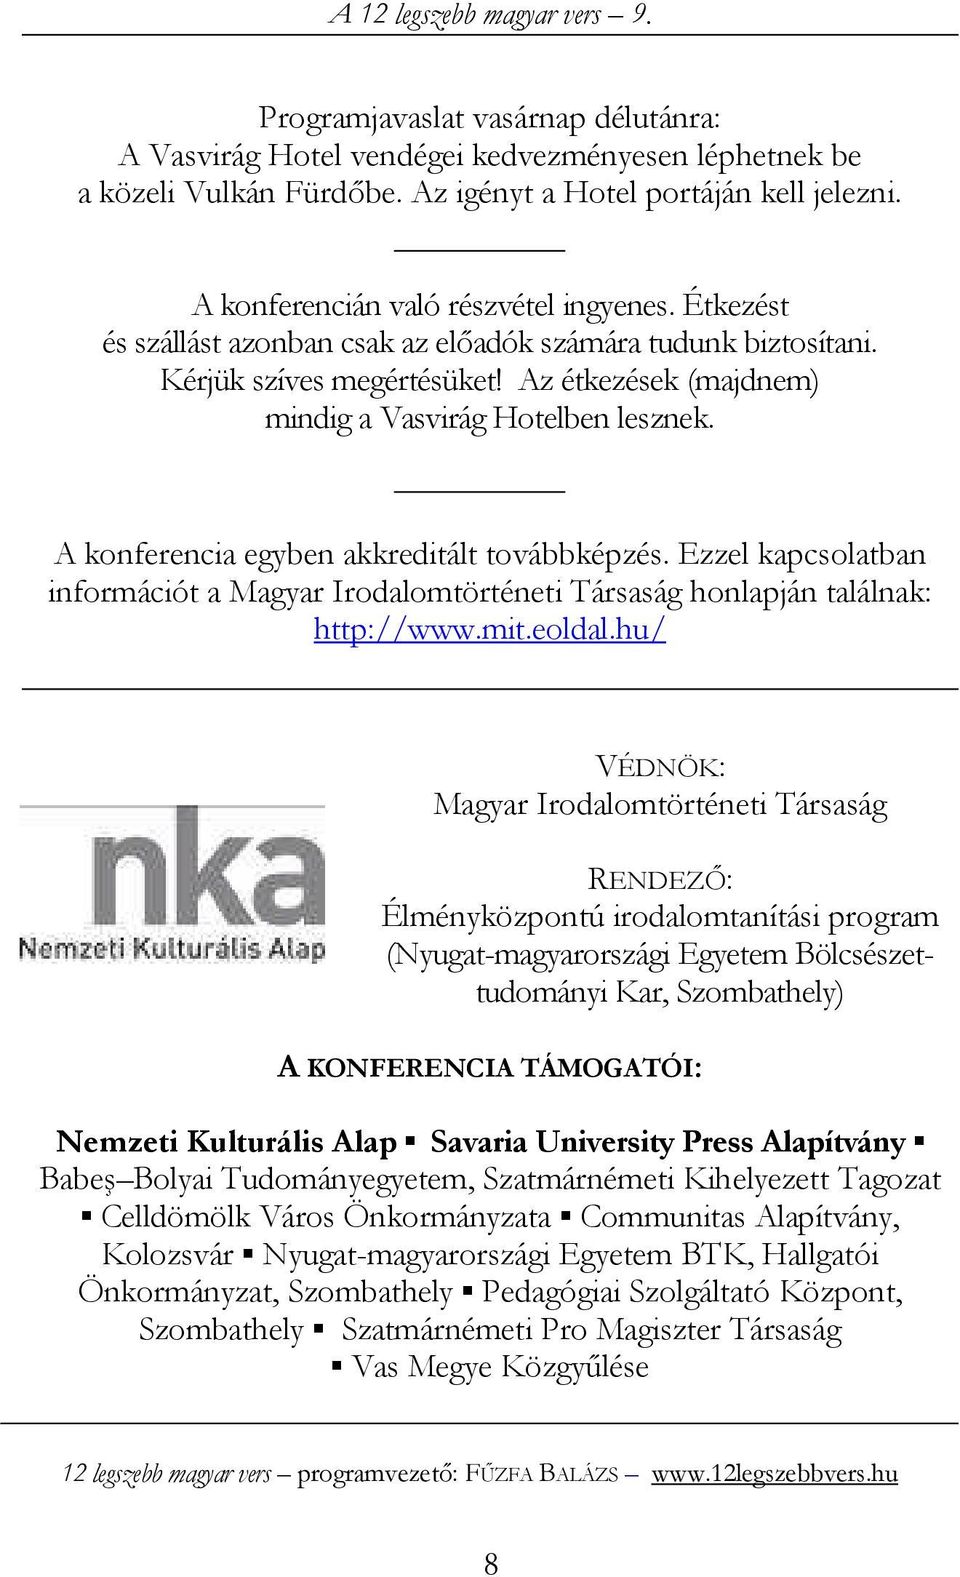 A konferencia egyben akkreditált továbbképzés. Ezzel kapcsolatban információt a Magyar Irodalomtörténeti Társaság honlapján találnak: http://www.mit.eoldal.